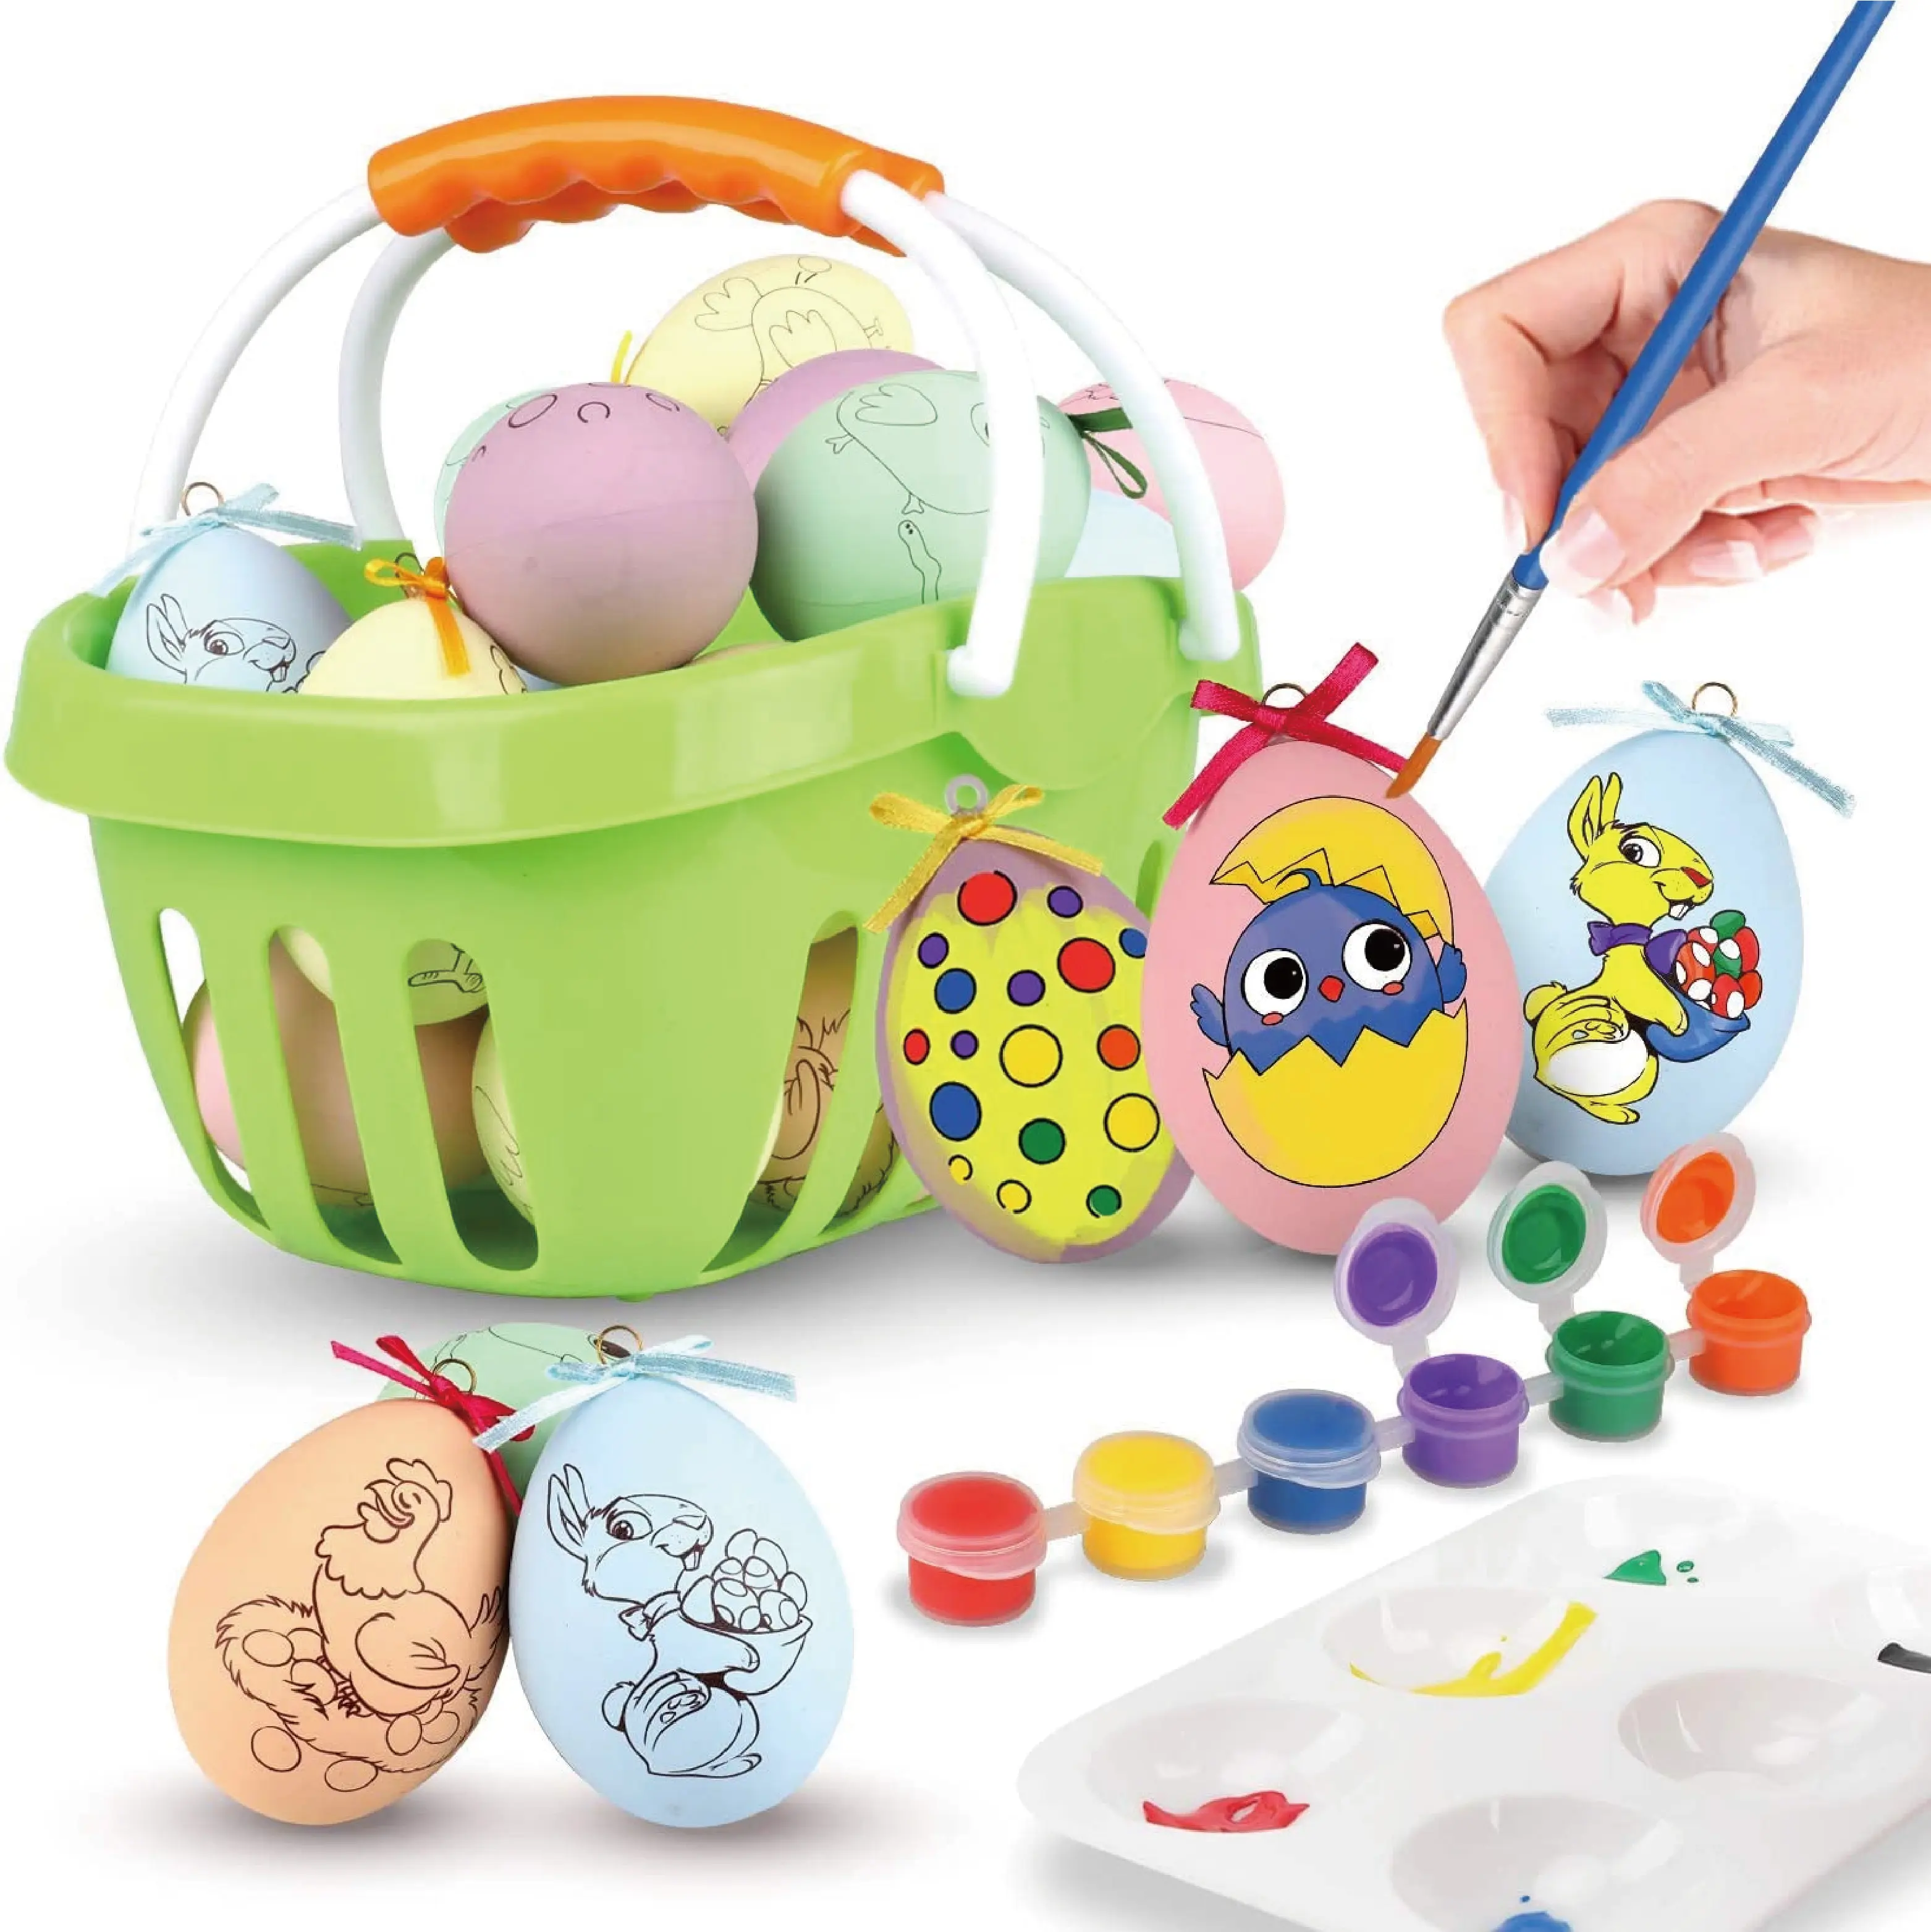 Nuovo Design fai da te Doodle Toys Kit decoratore per uova di pasqua uovo di plastica per pittura di coniglio per bambini